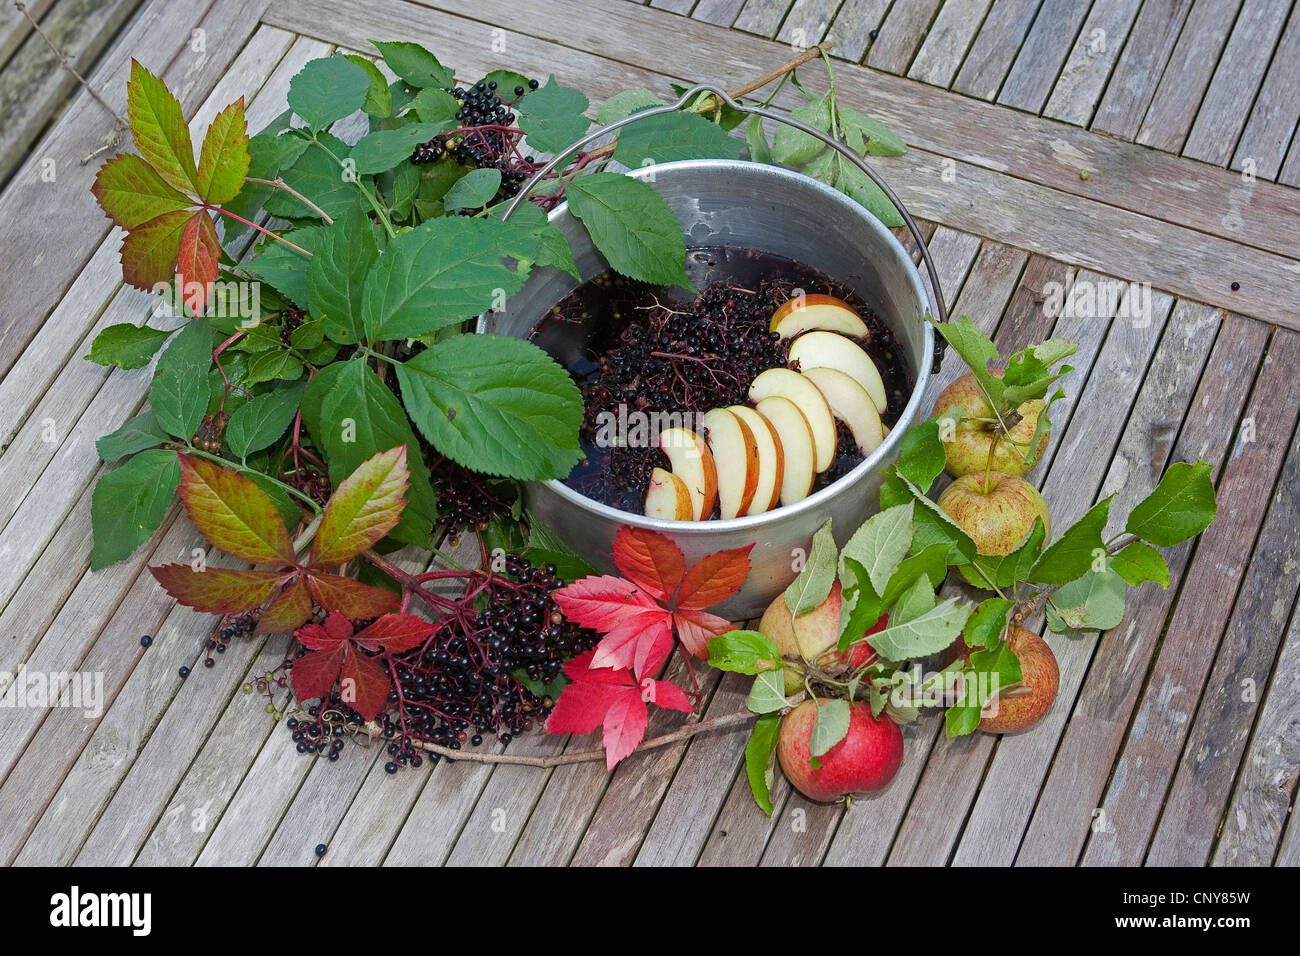 L'aîné, le Sureau noir européen commun, ancien (Sambucus nigra), de baies de sureau avec des tranches de pomme dans un pot Banque D'Images